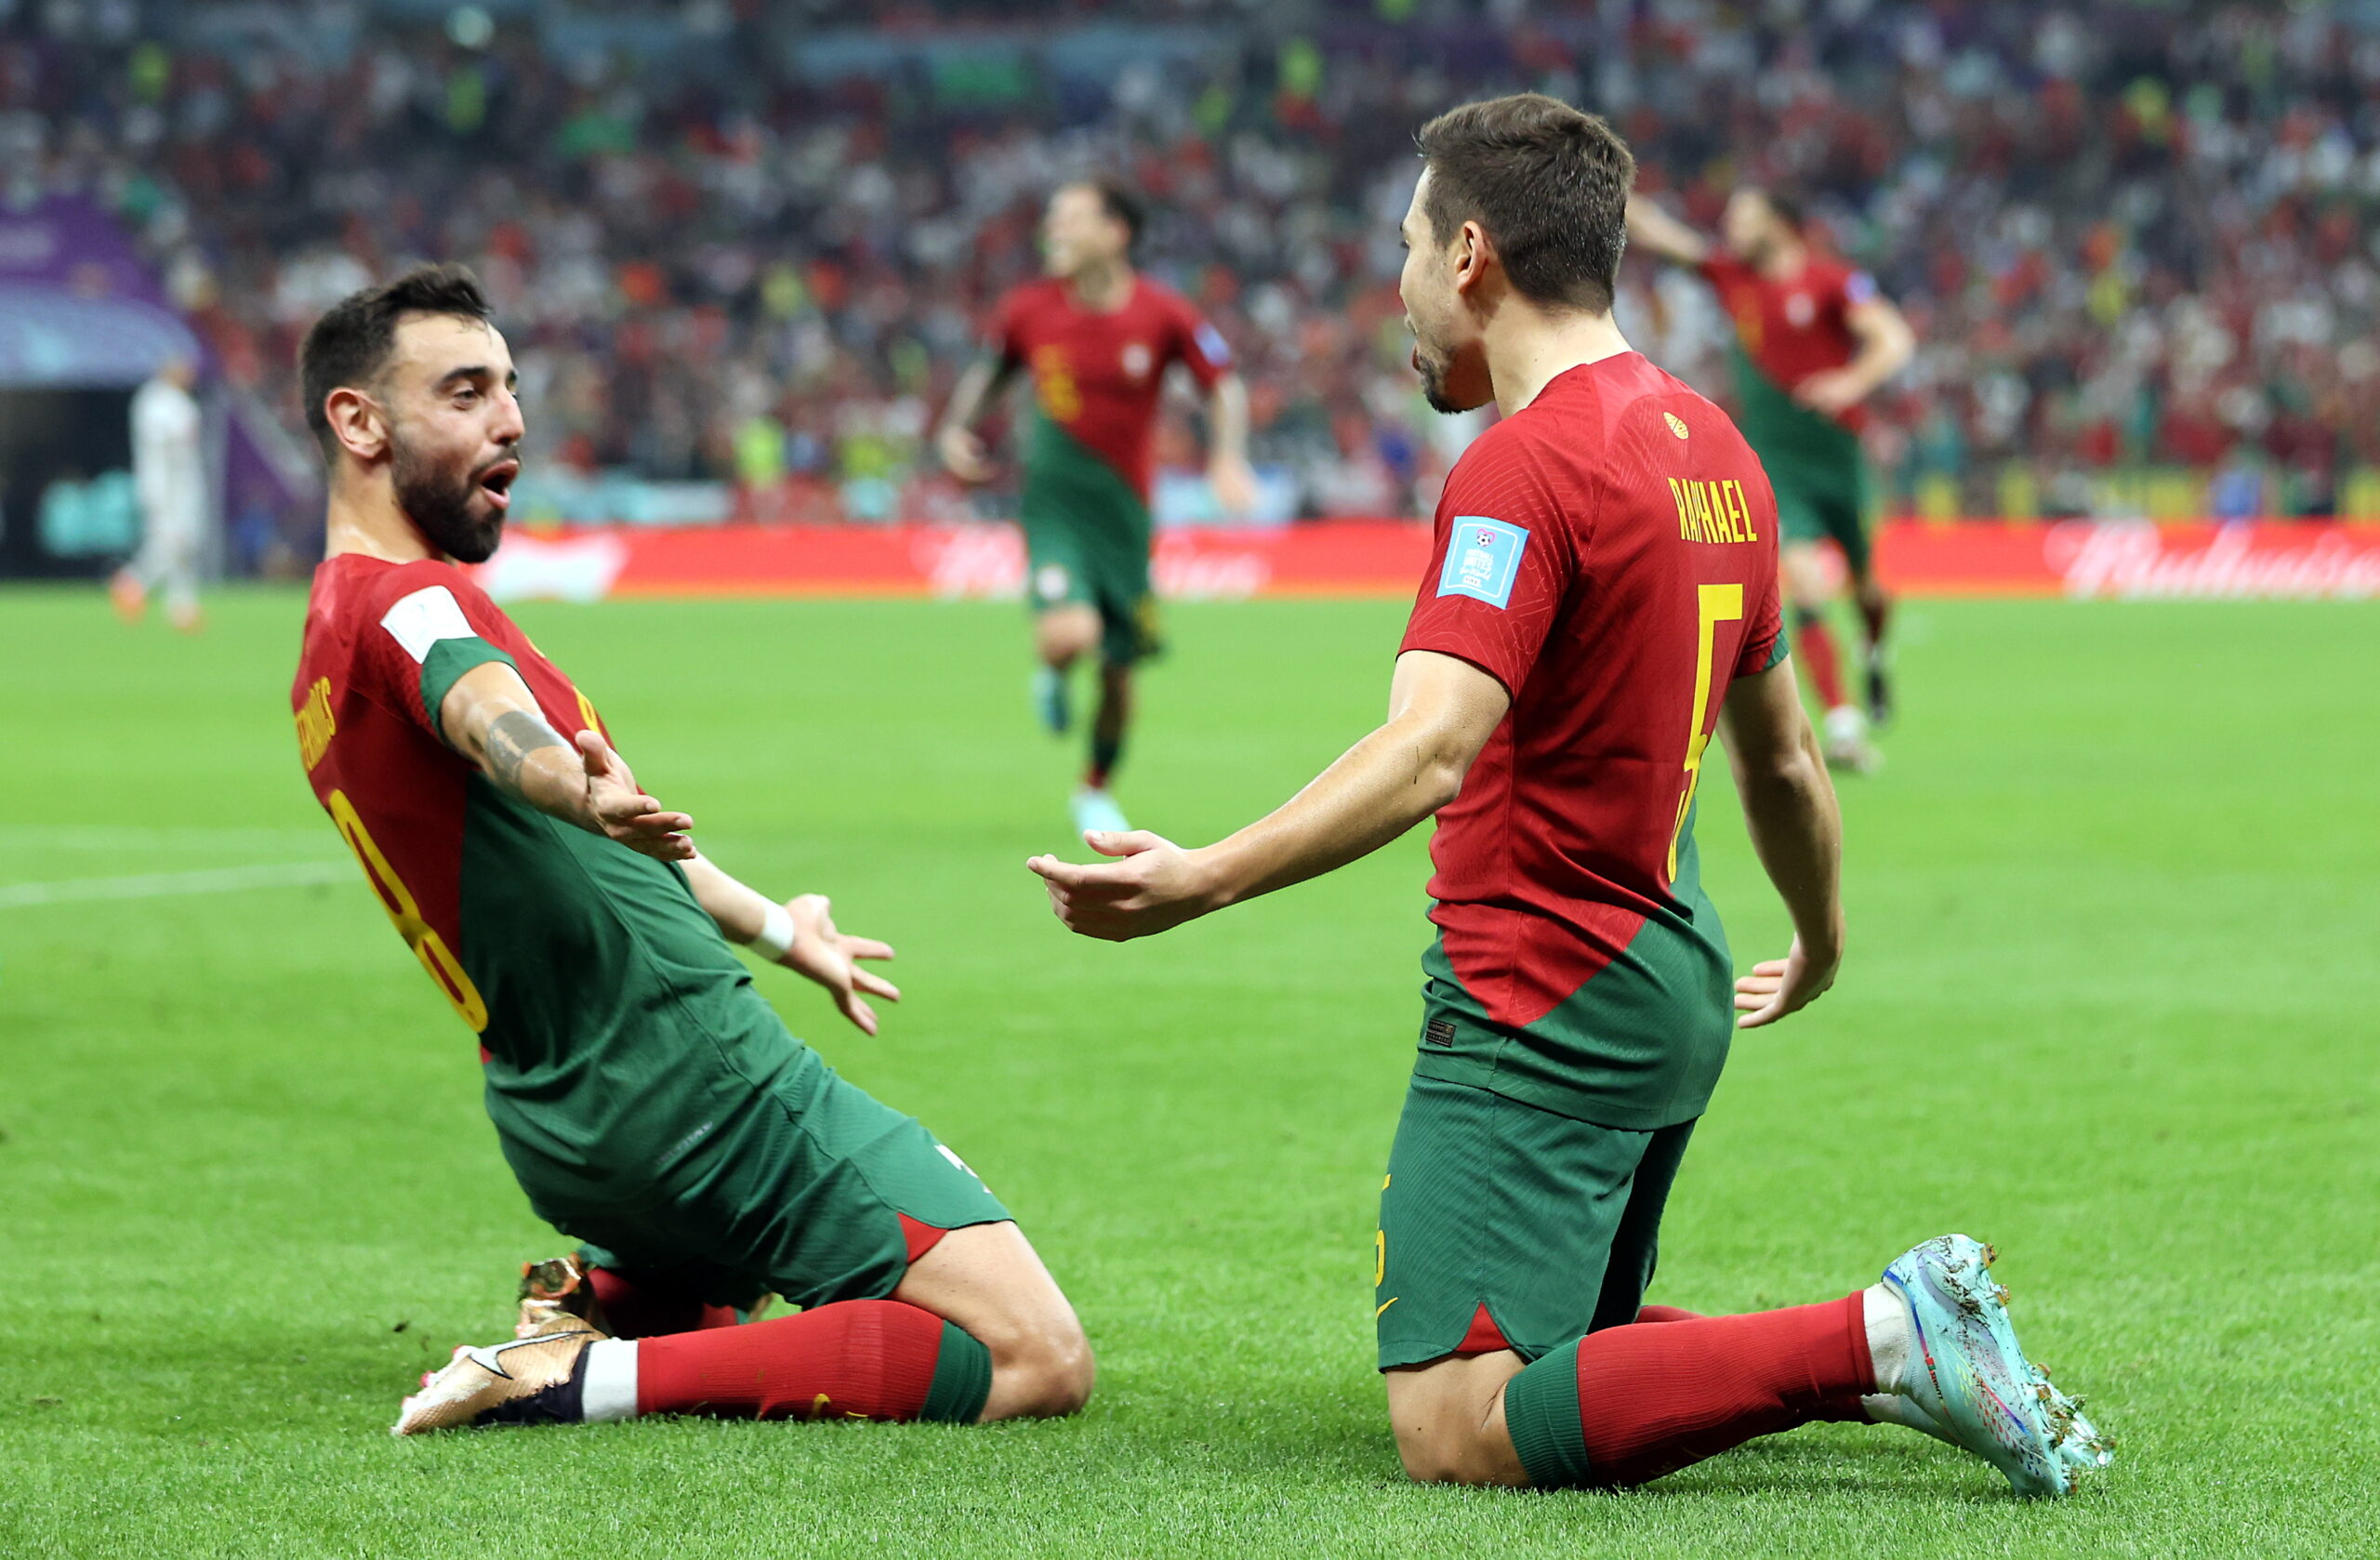 Μουντιάλ 2022, Πορτογαλία - Ελβετία 6-1: Ο Σάντος έκανε ματ με Ράμος αντί Ρονάλντο και πήγε στους 8